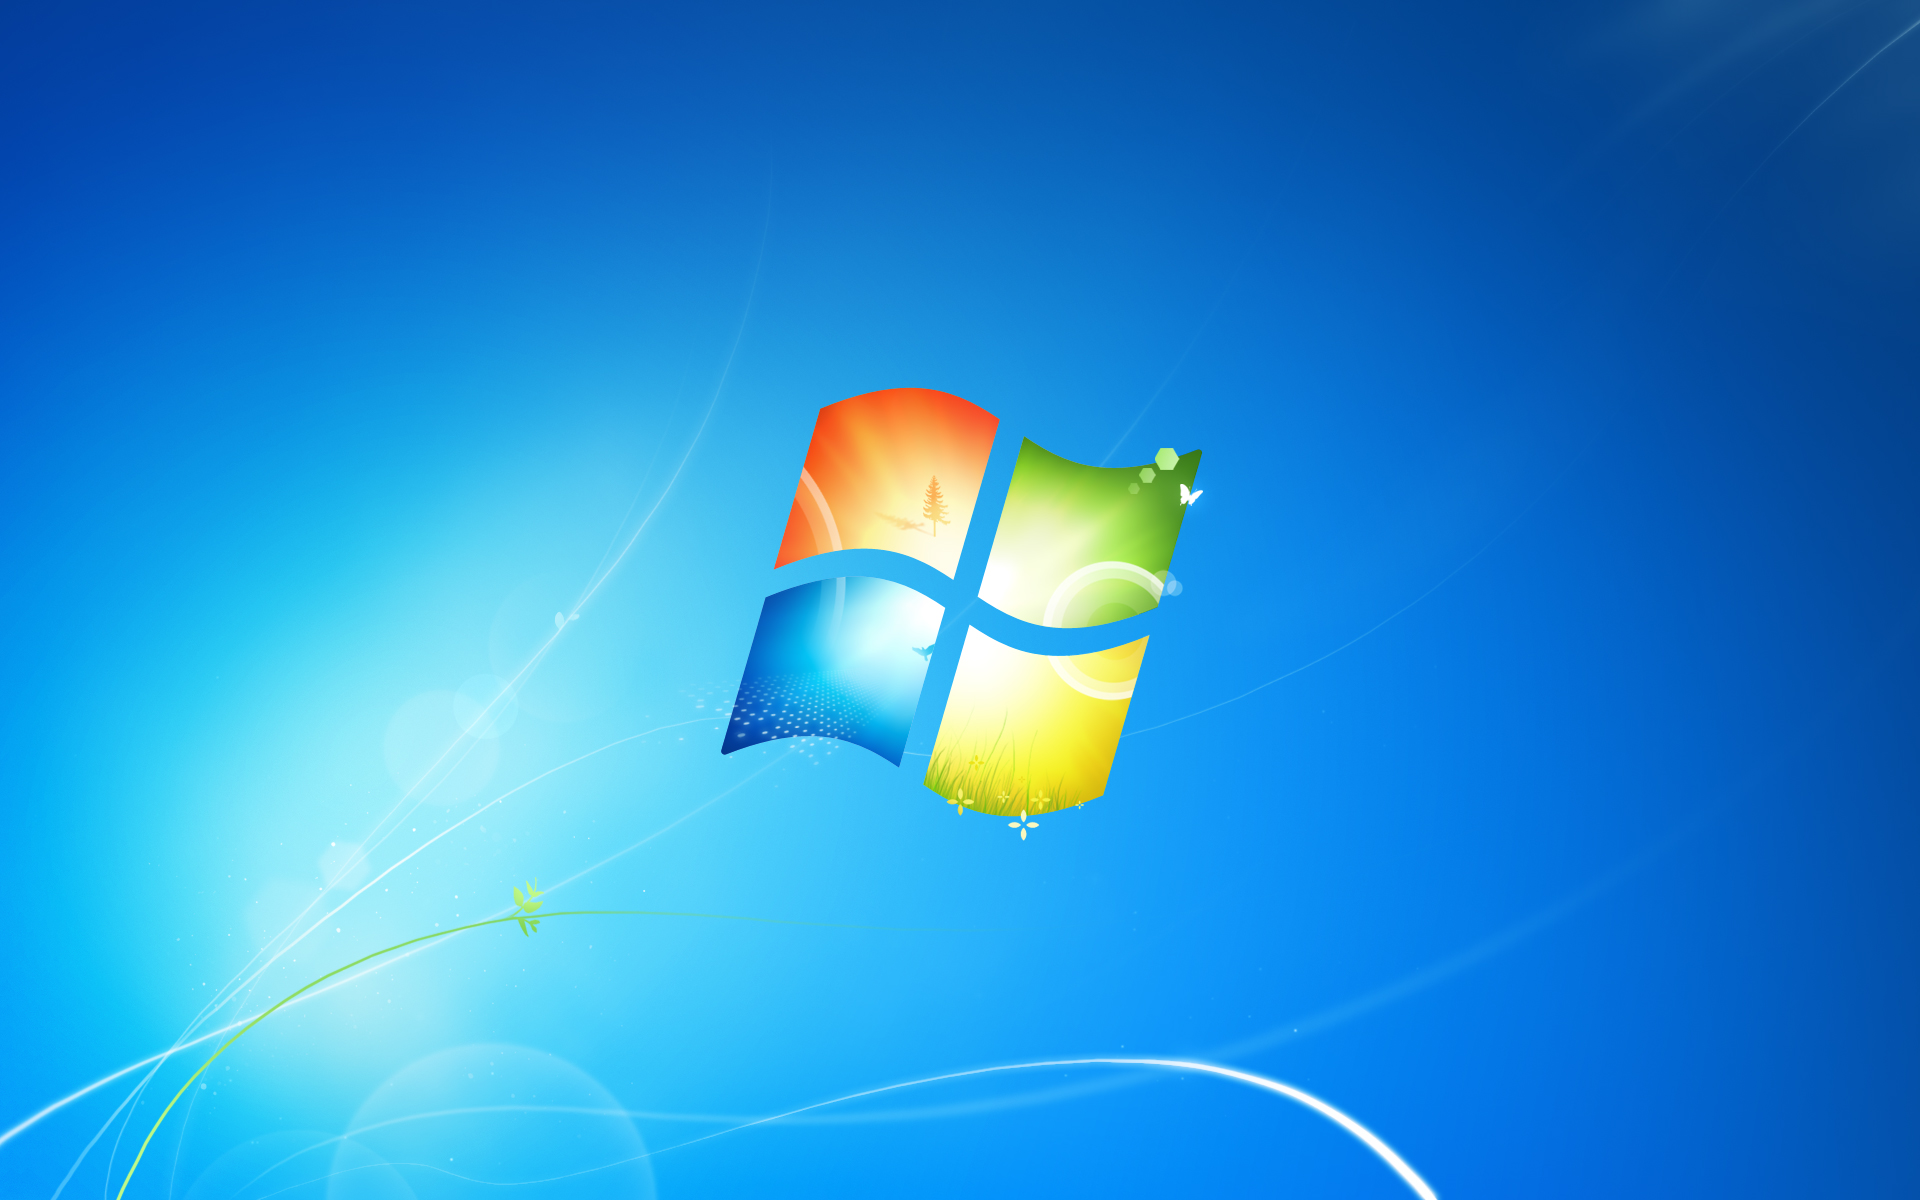 Các hình nền mặc định của Windows 7 là tuyệt đẹp. Hãy chọn một trong số chúng để trang trí cho máy tính của bạn. Bạn cũng có thể chọn những hình nền đẹp từ Internet để tùy chỉnh cho desktop của mình.